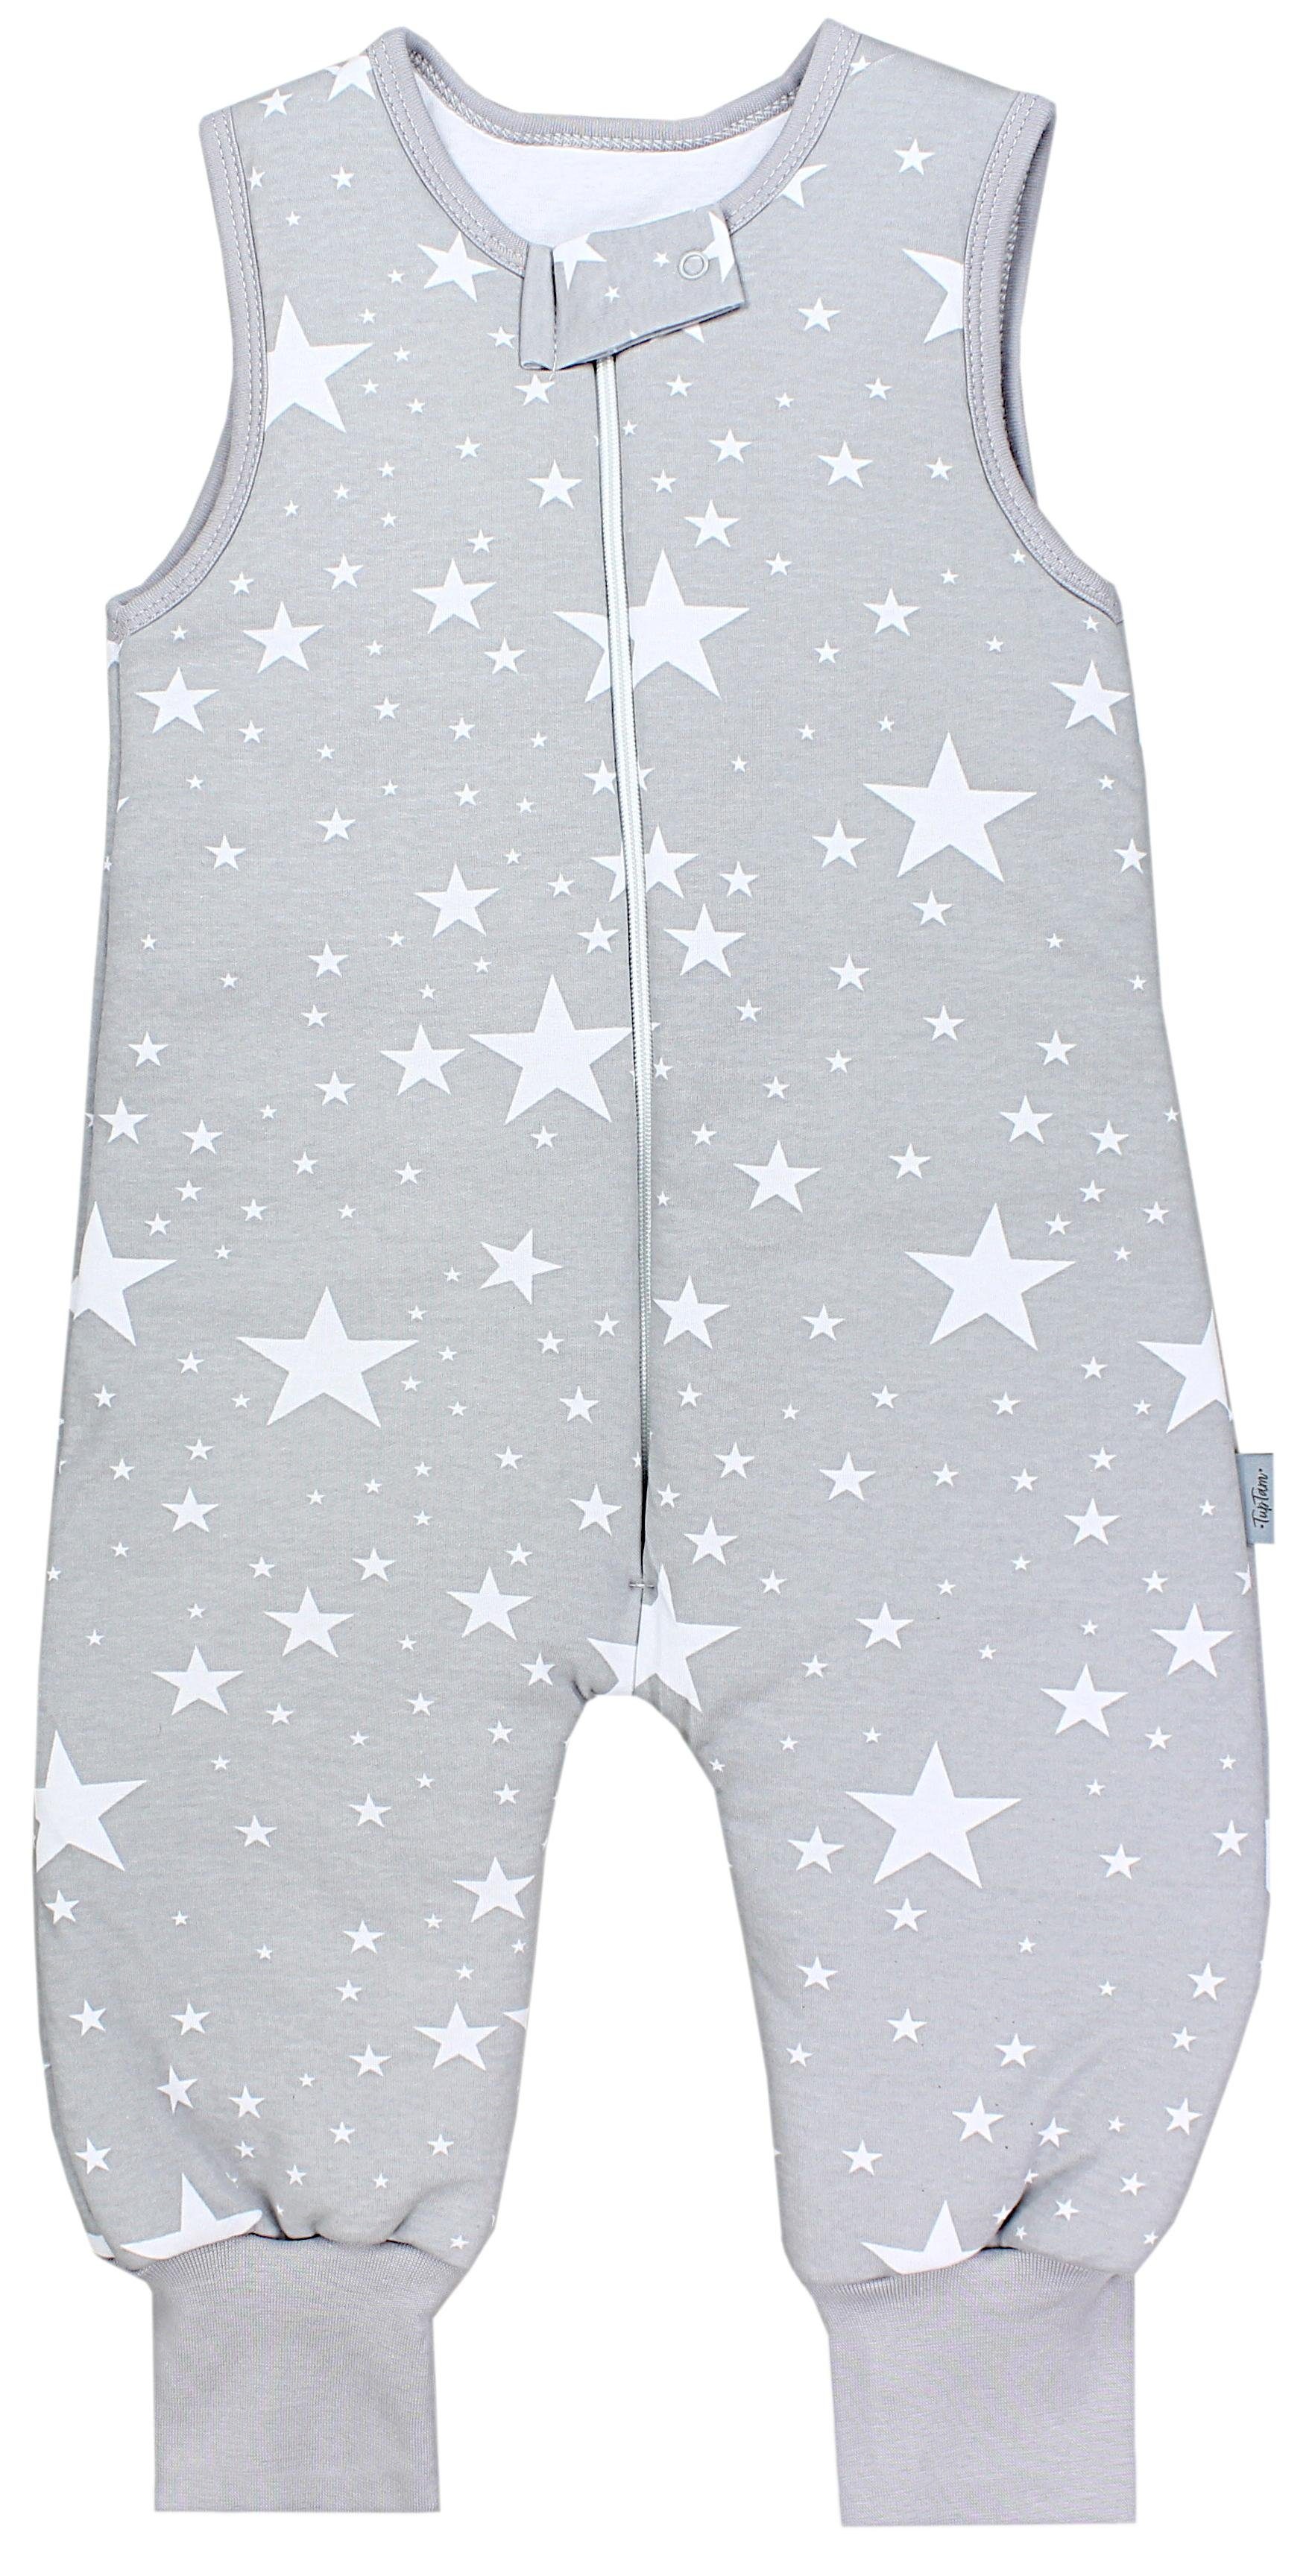 TupTam Babyschlafsack Winter Schlafsack mit Beinen OEKO-TEX zertifiziert 2,5 TOG Unisex Weiße Sterne / Grau